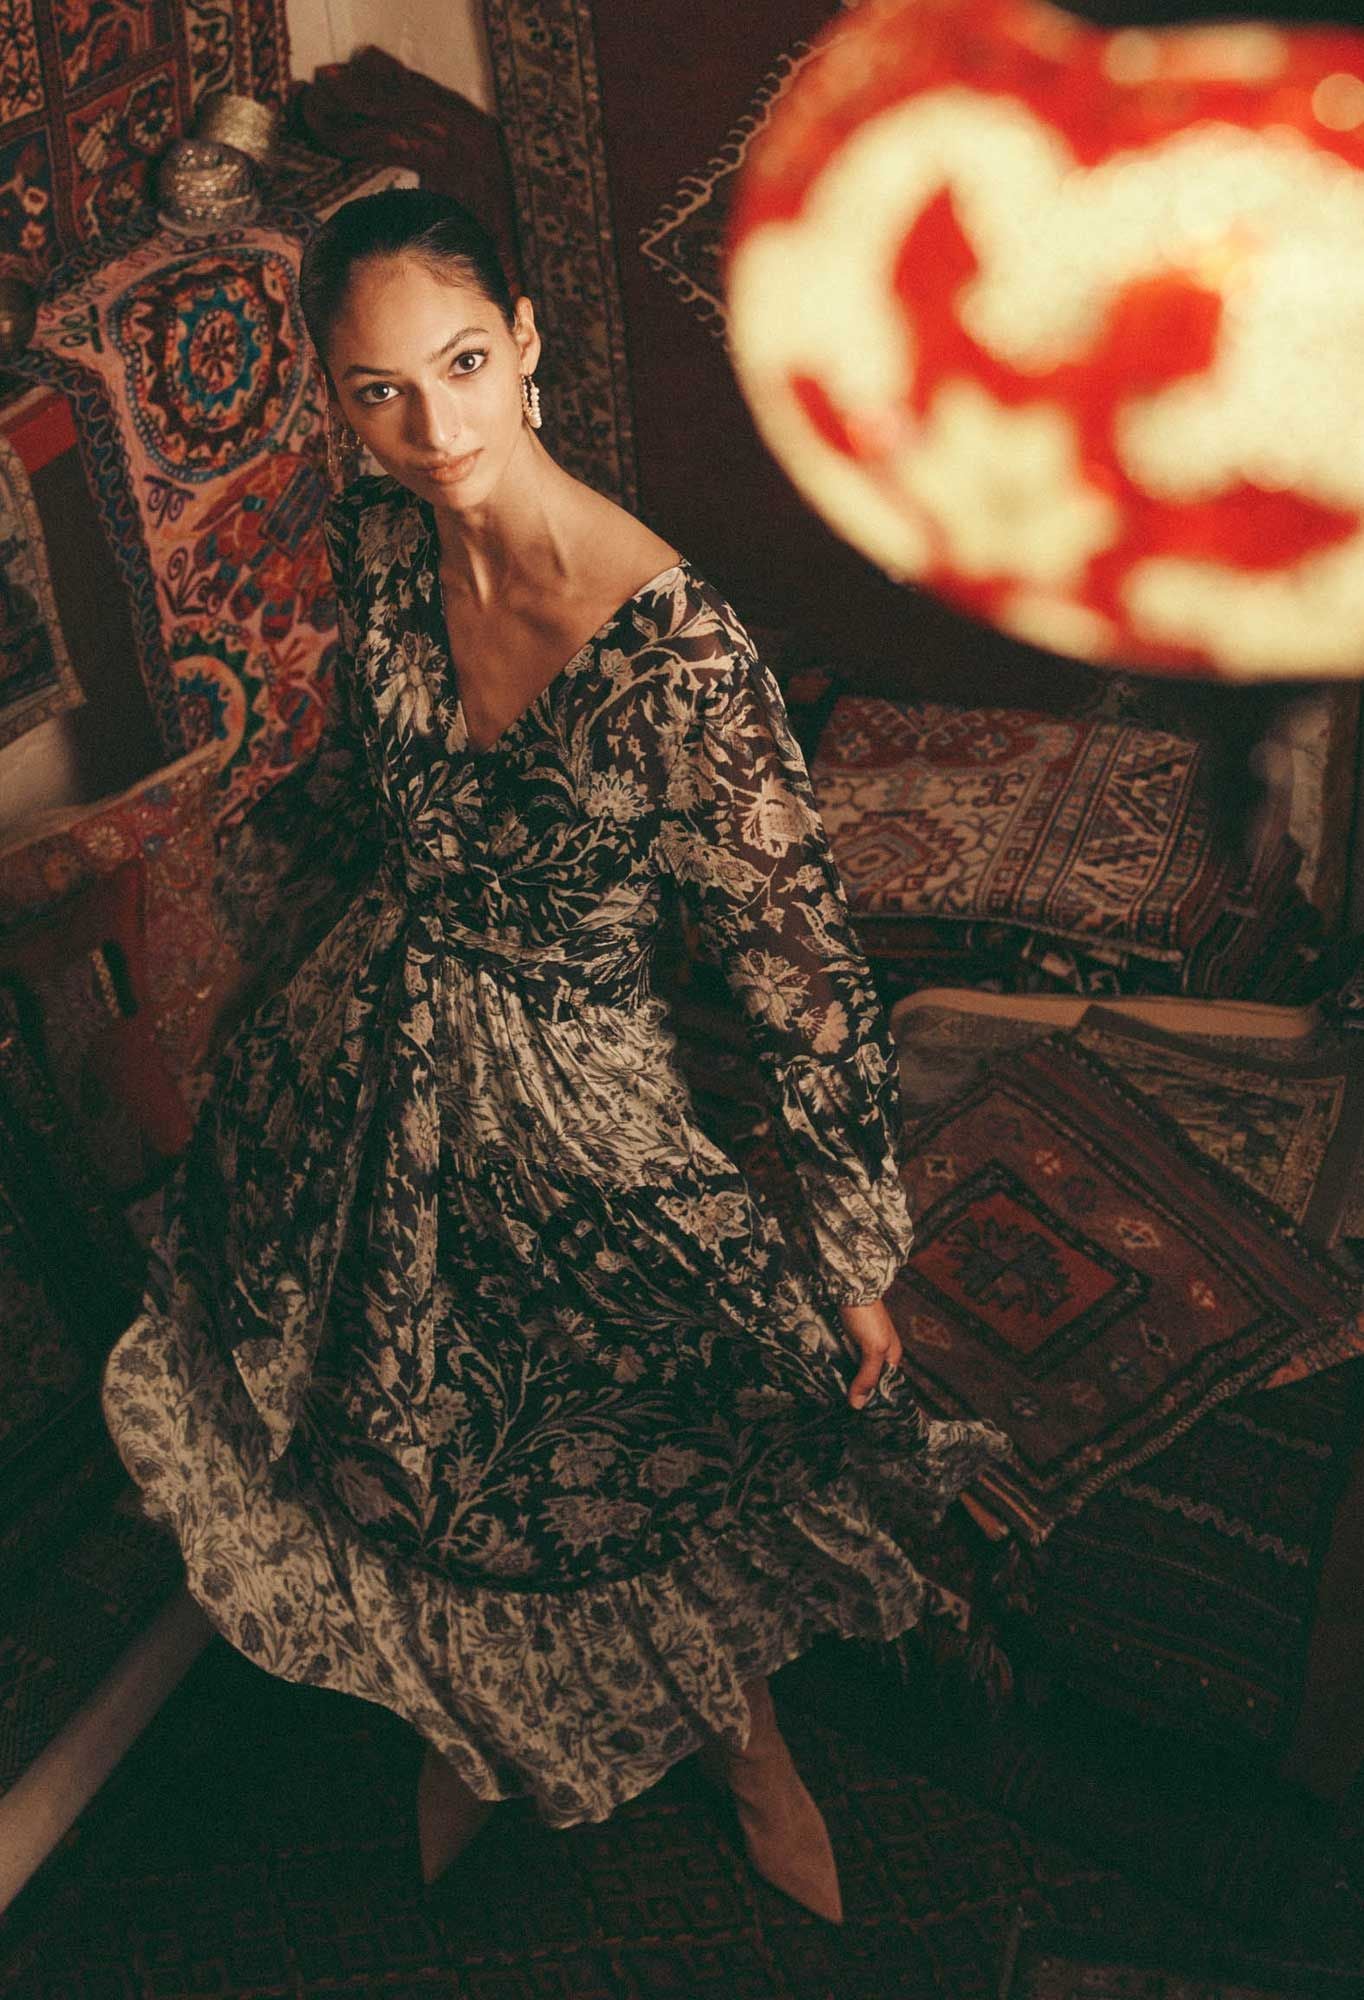 Ivy Viscose Maxi Dress - Persian Floral - et seQ fashion